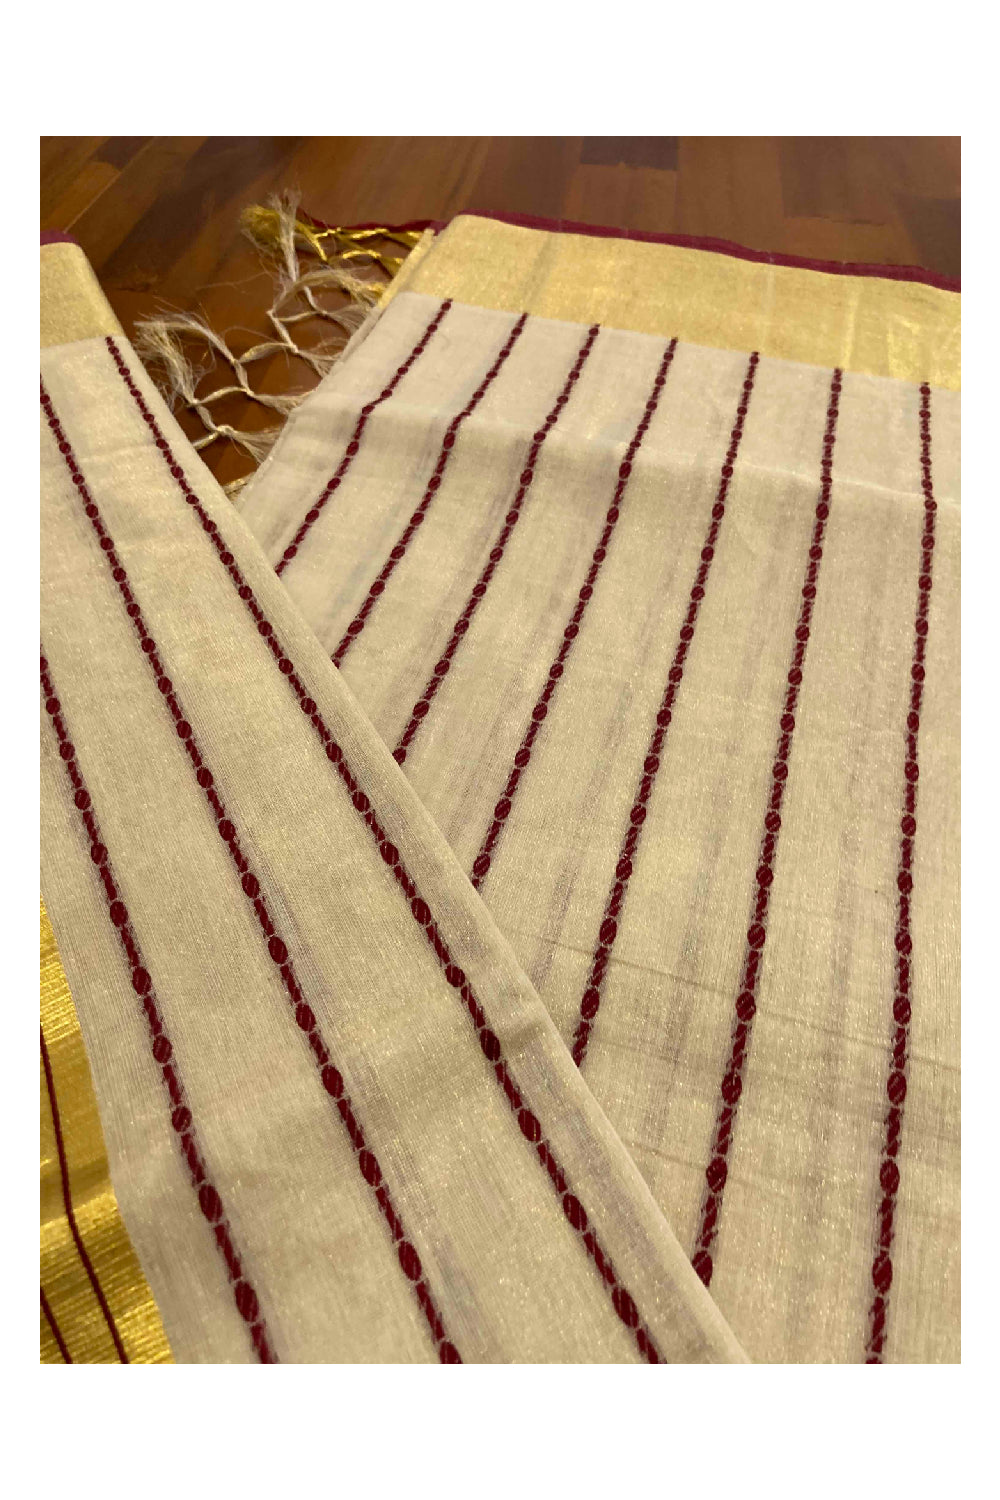 Southloom Kuthampully Handloom Tissue Saree with Kasavu and Marron Stripes Body